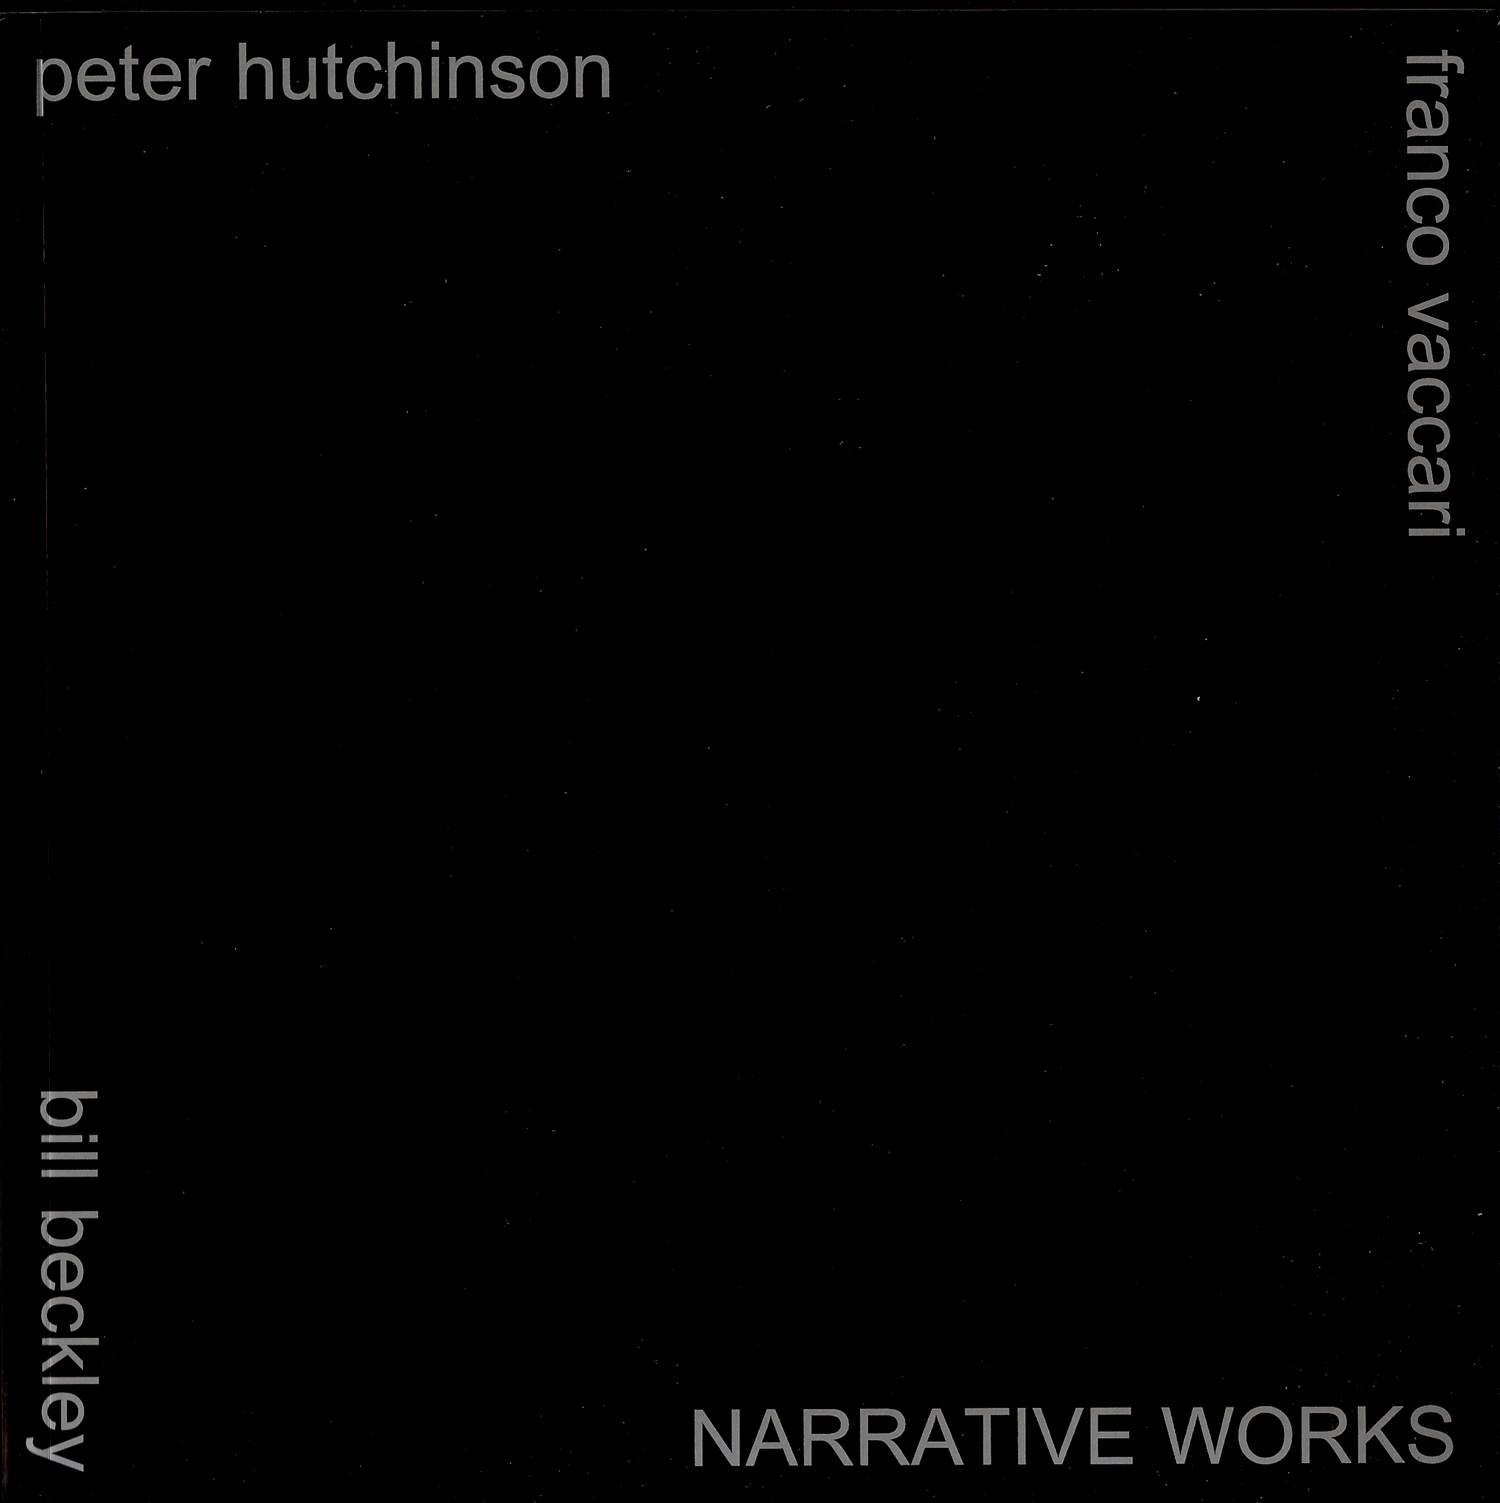 Bill Beckley, Peter Hutchinson, Franco Vaccari - Narrative works